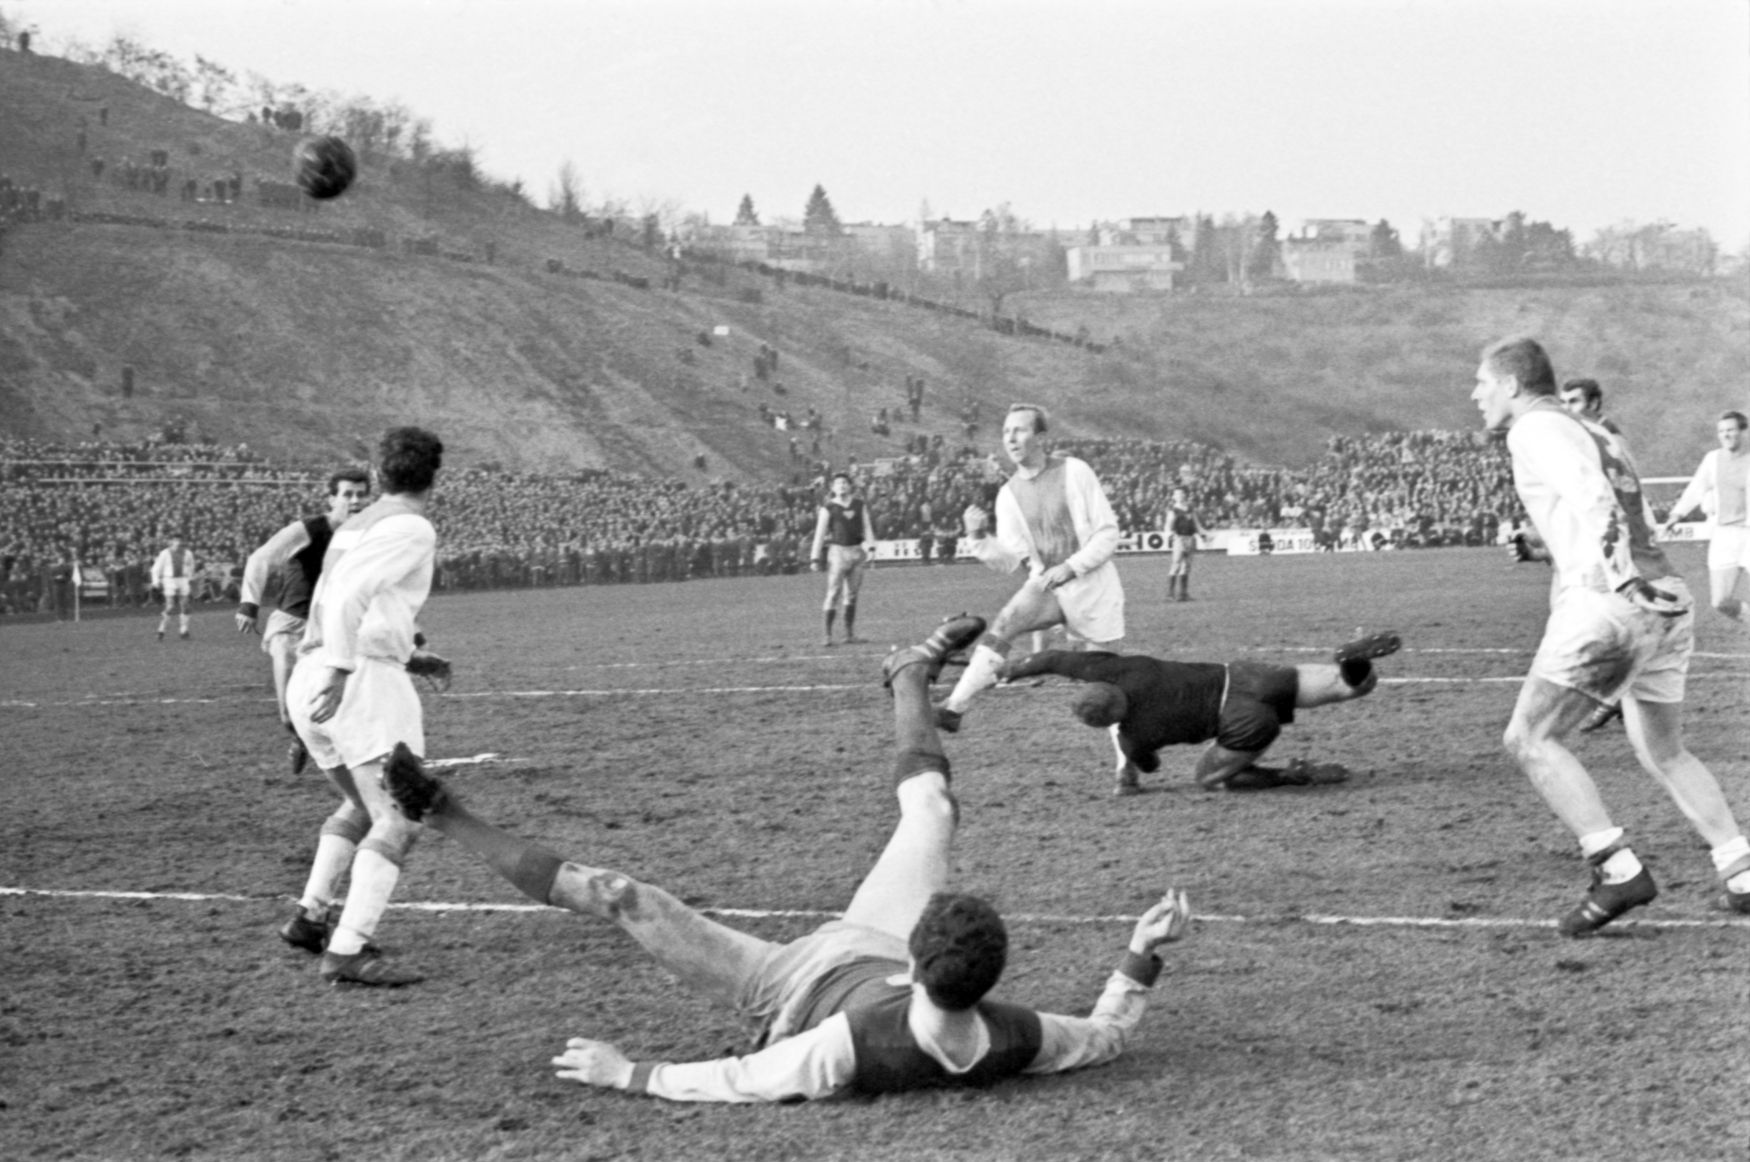 Stadion Juliska před modernizací v roce 1975